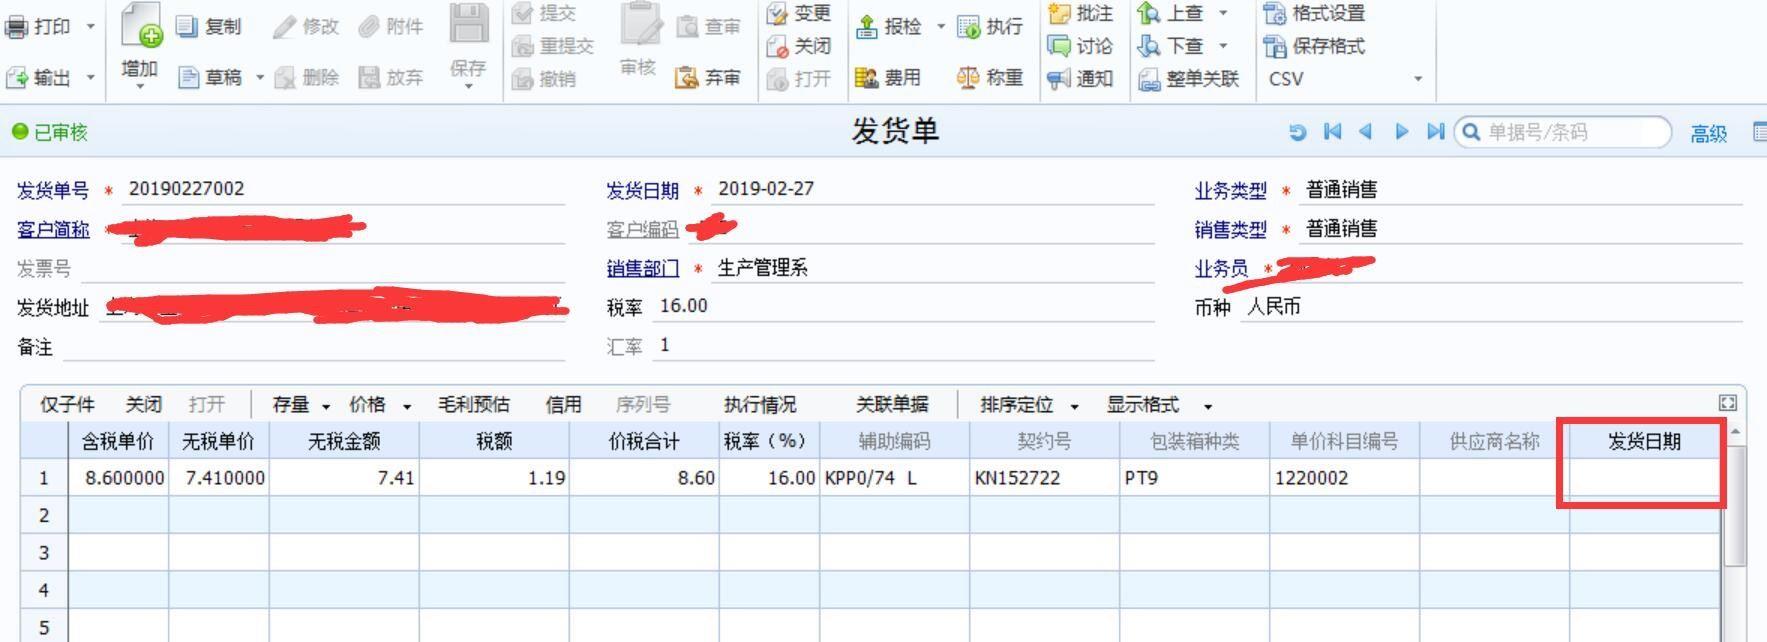 金华剑财务软件价格
:青岛财务软件推荐哪个